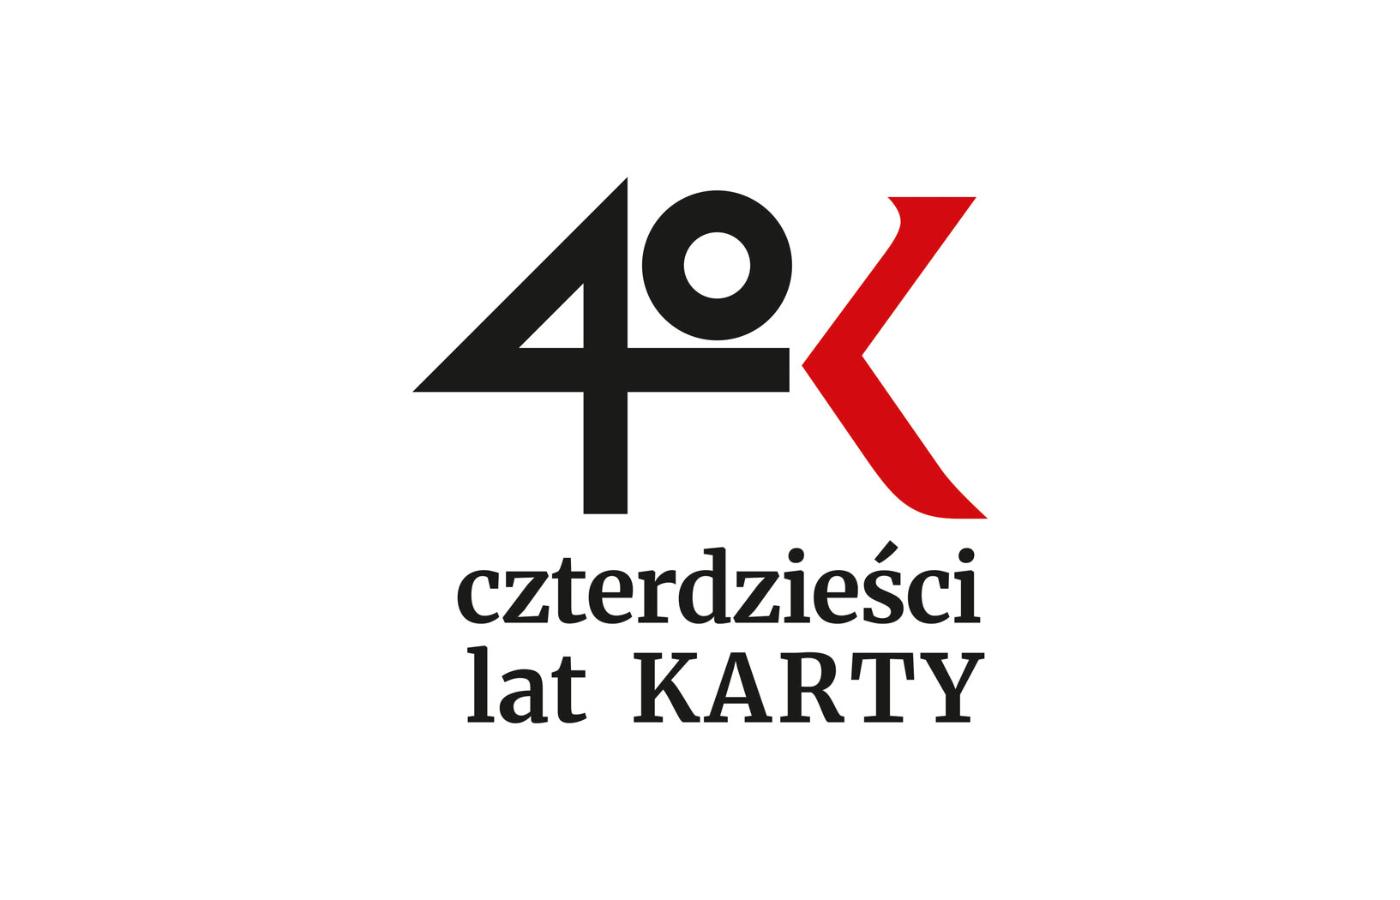 Ośrodek KARTA wchodzi w swoją rocznicę, gdy Polska przeżywa najgłębszy od dekad podział wewnętrzny.